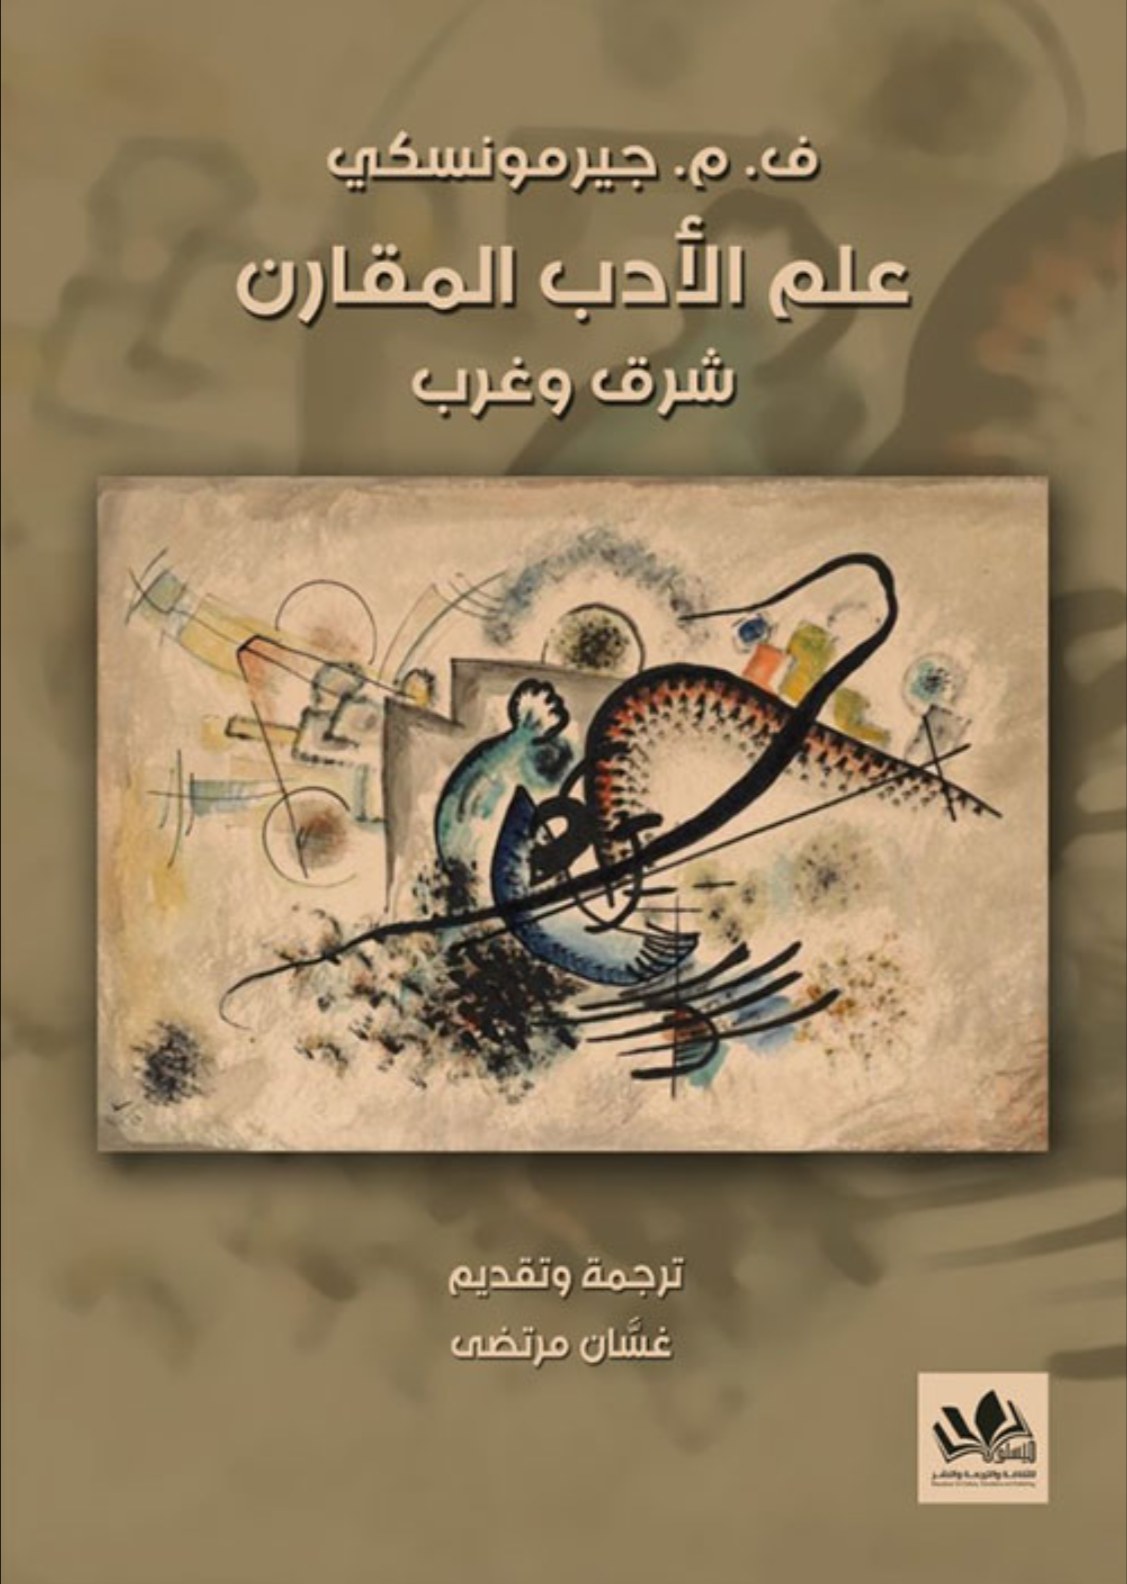 باقة من الإصدارات الأدبية لمؤسسة ميسلون للثقافة والترجمة والنشر